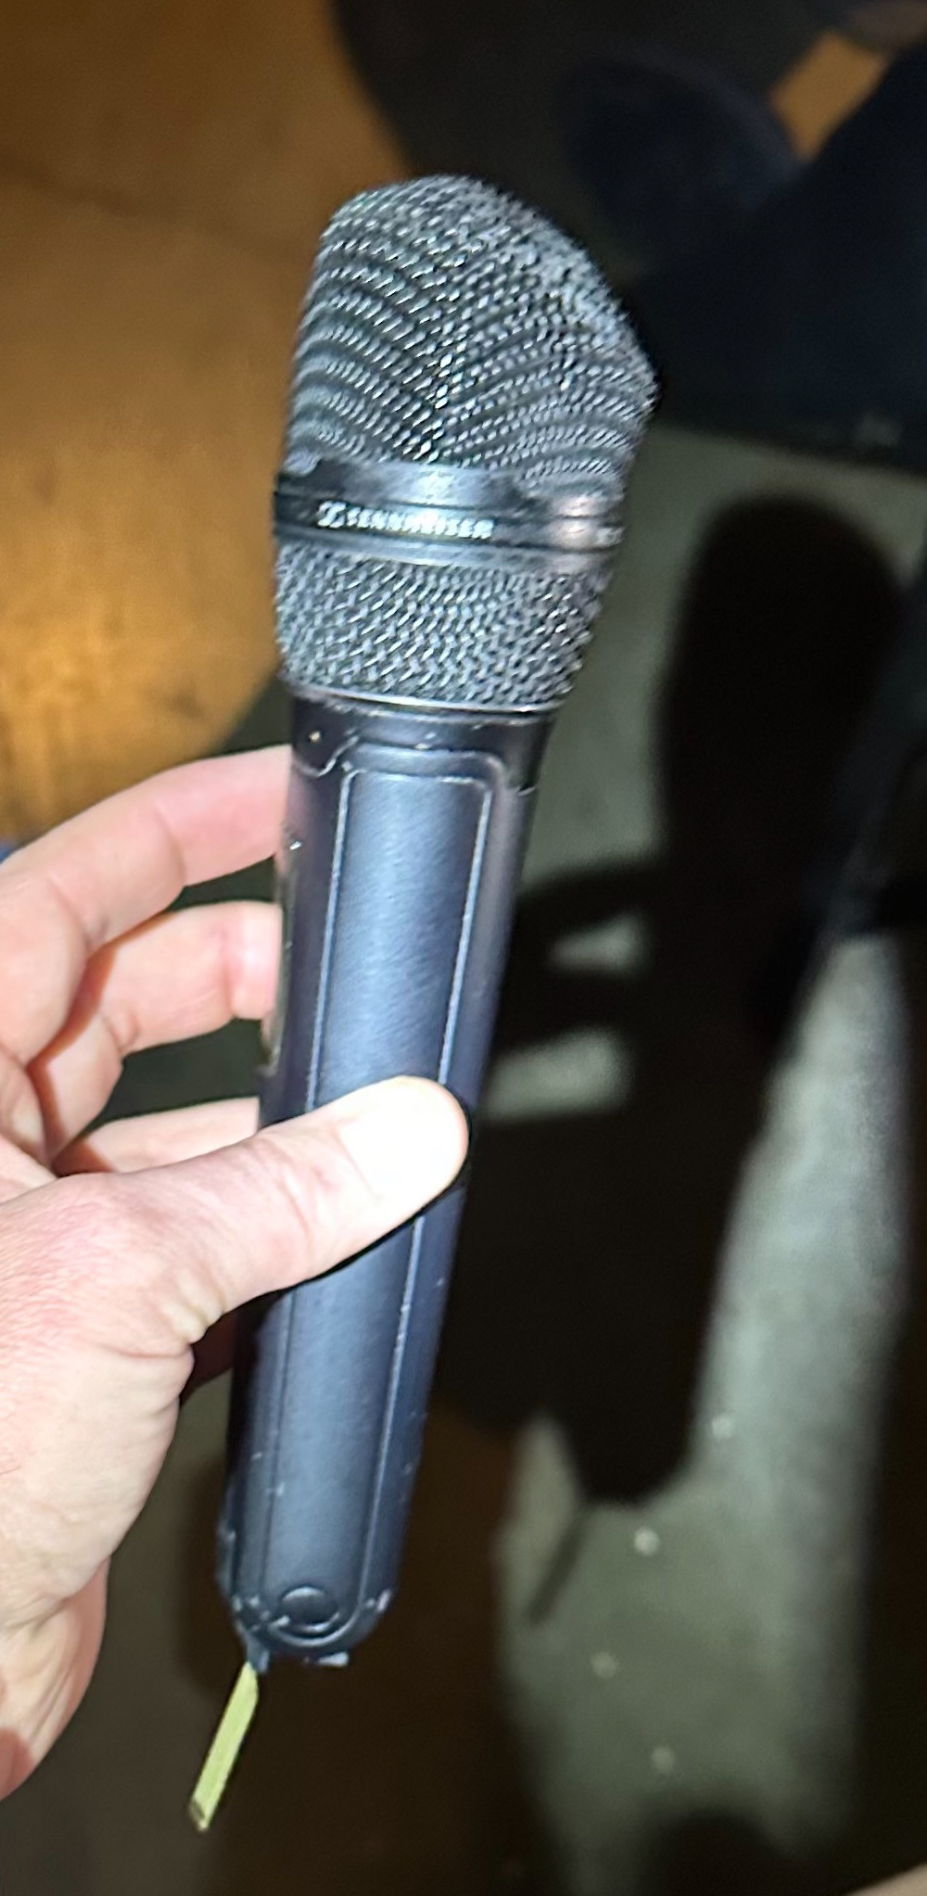 Les microphones peuvent subir les aléas de la scène. Mieux vaut toujours prévoir des micros de secours.